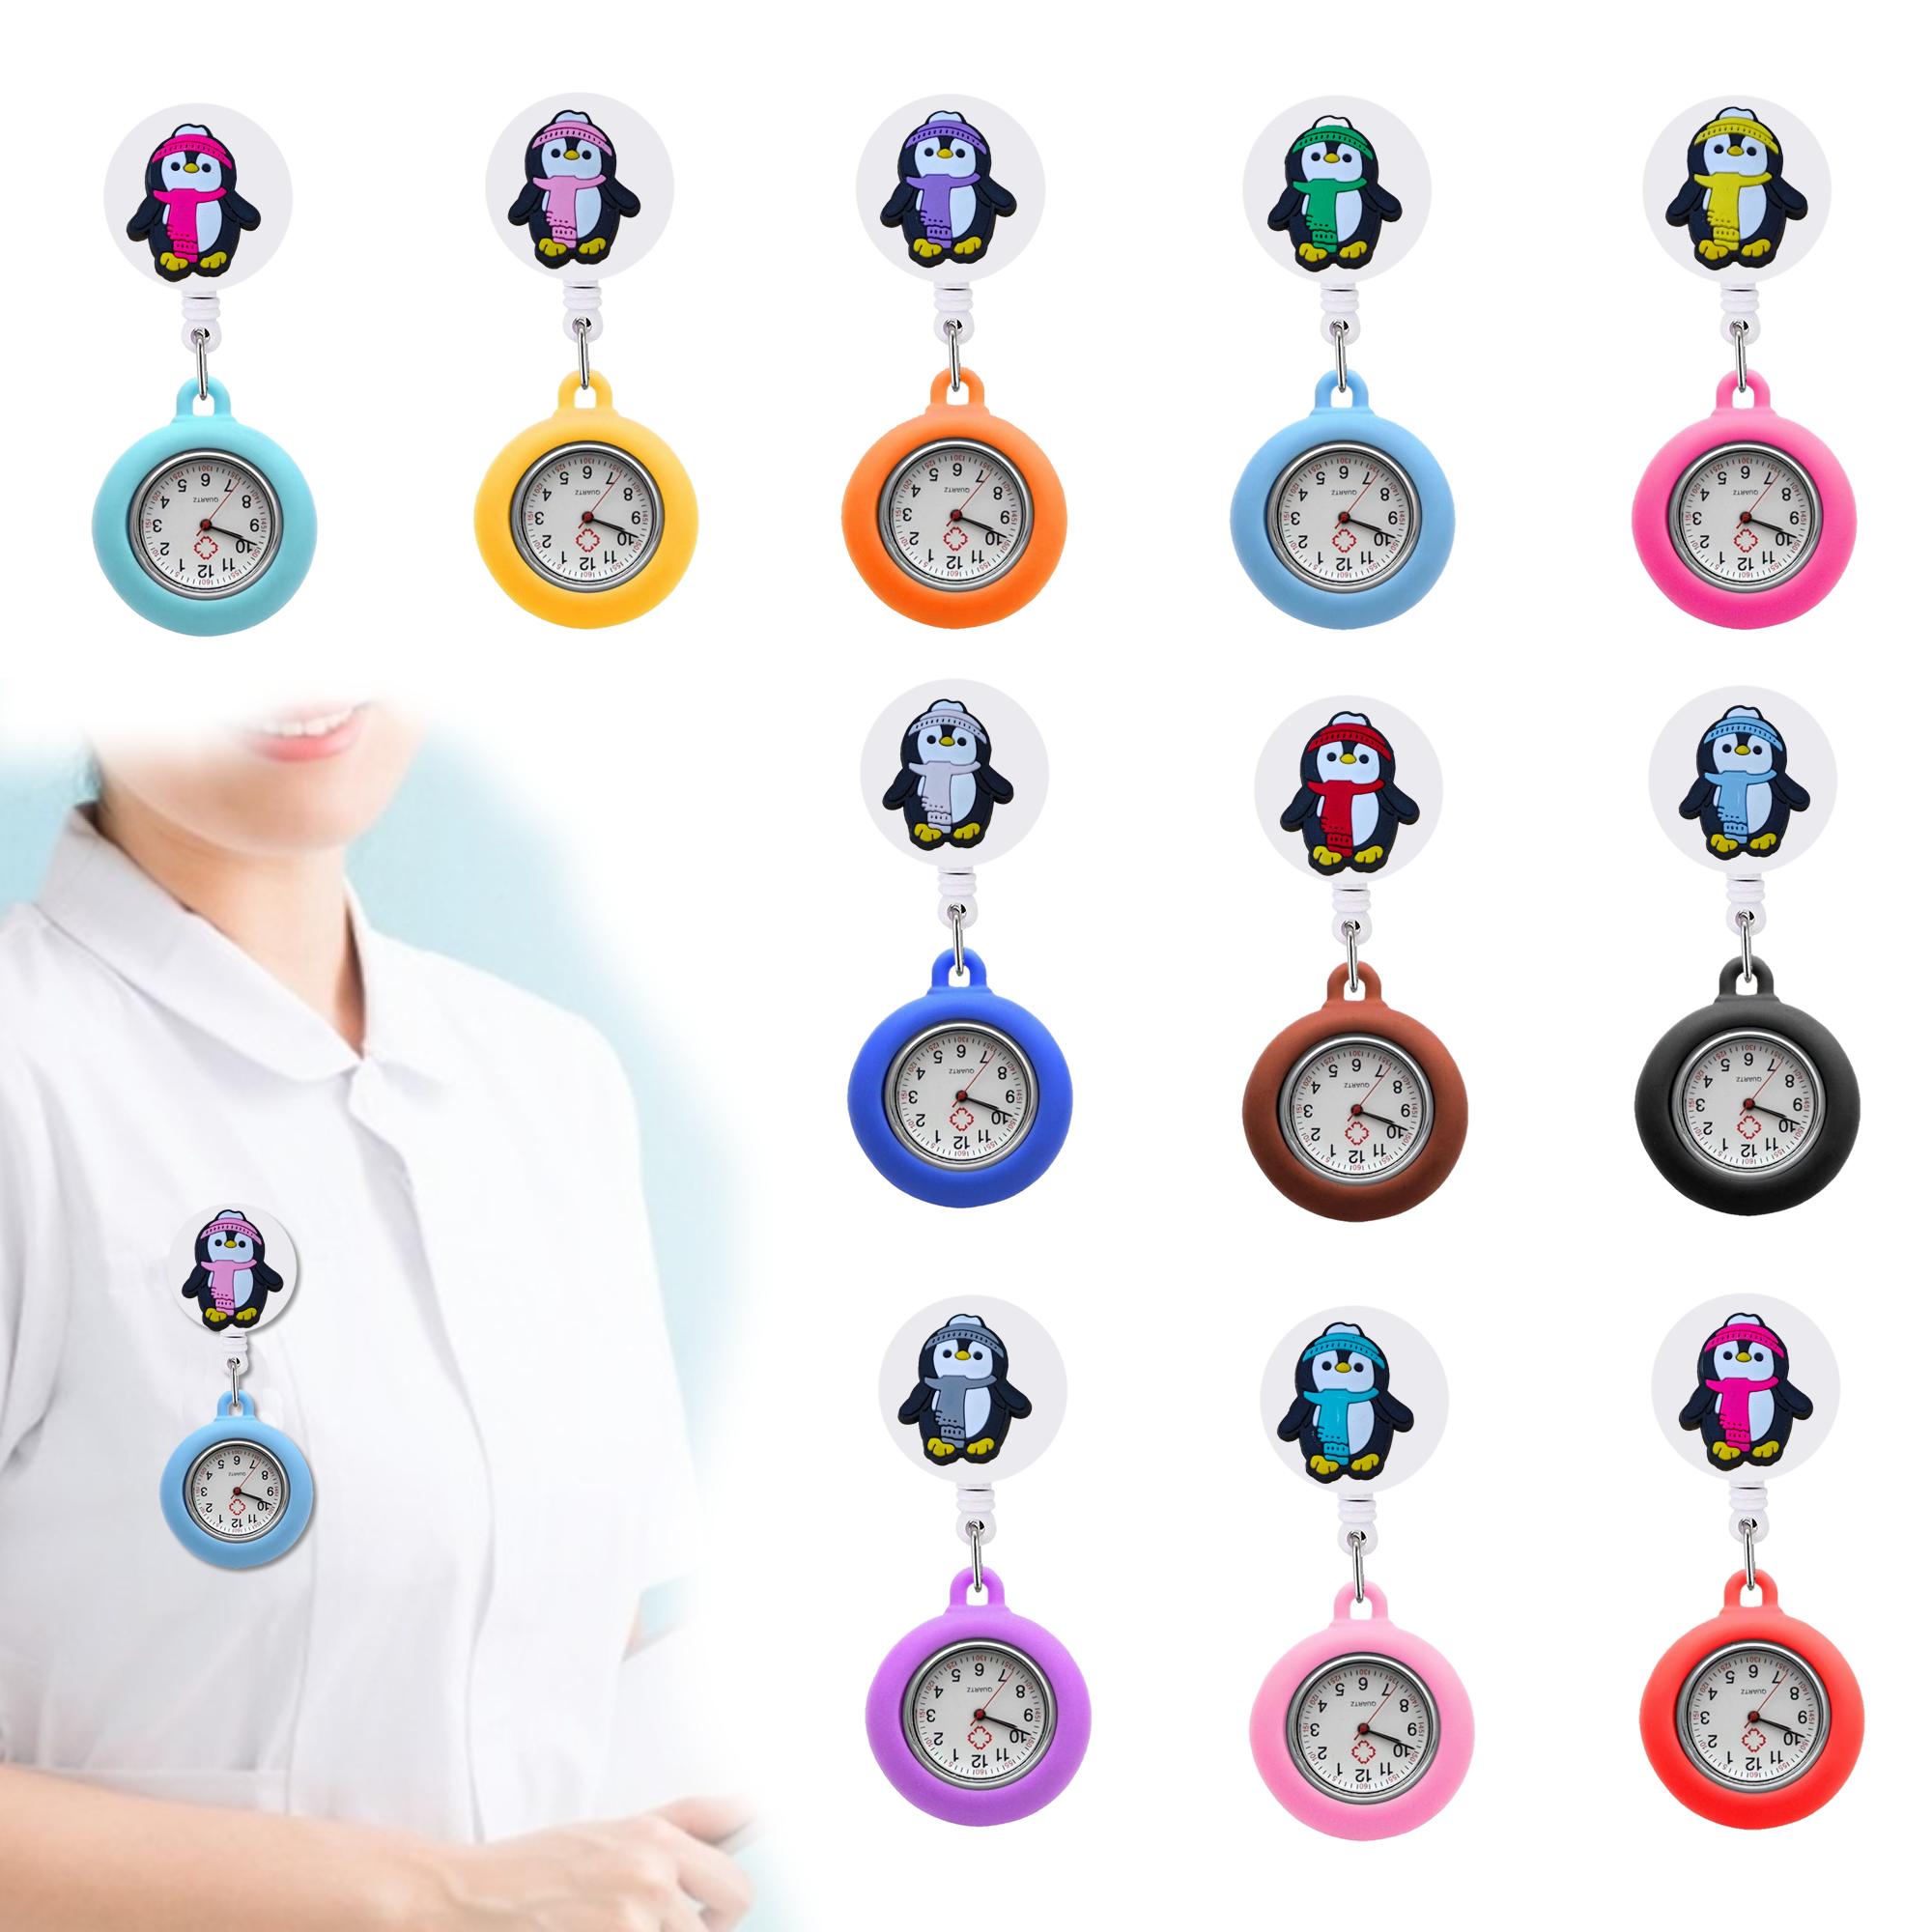 Andra modetillbehör Penguin Clip Pocket Watches Womens Nurse On Watch For Nurses Läkare Sile Brosch Fob Medical Lapel Drop Deli Oth8p